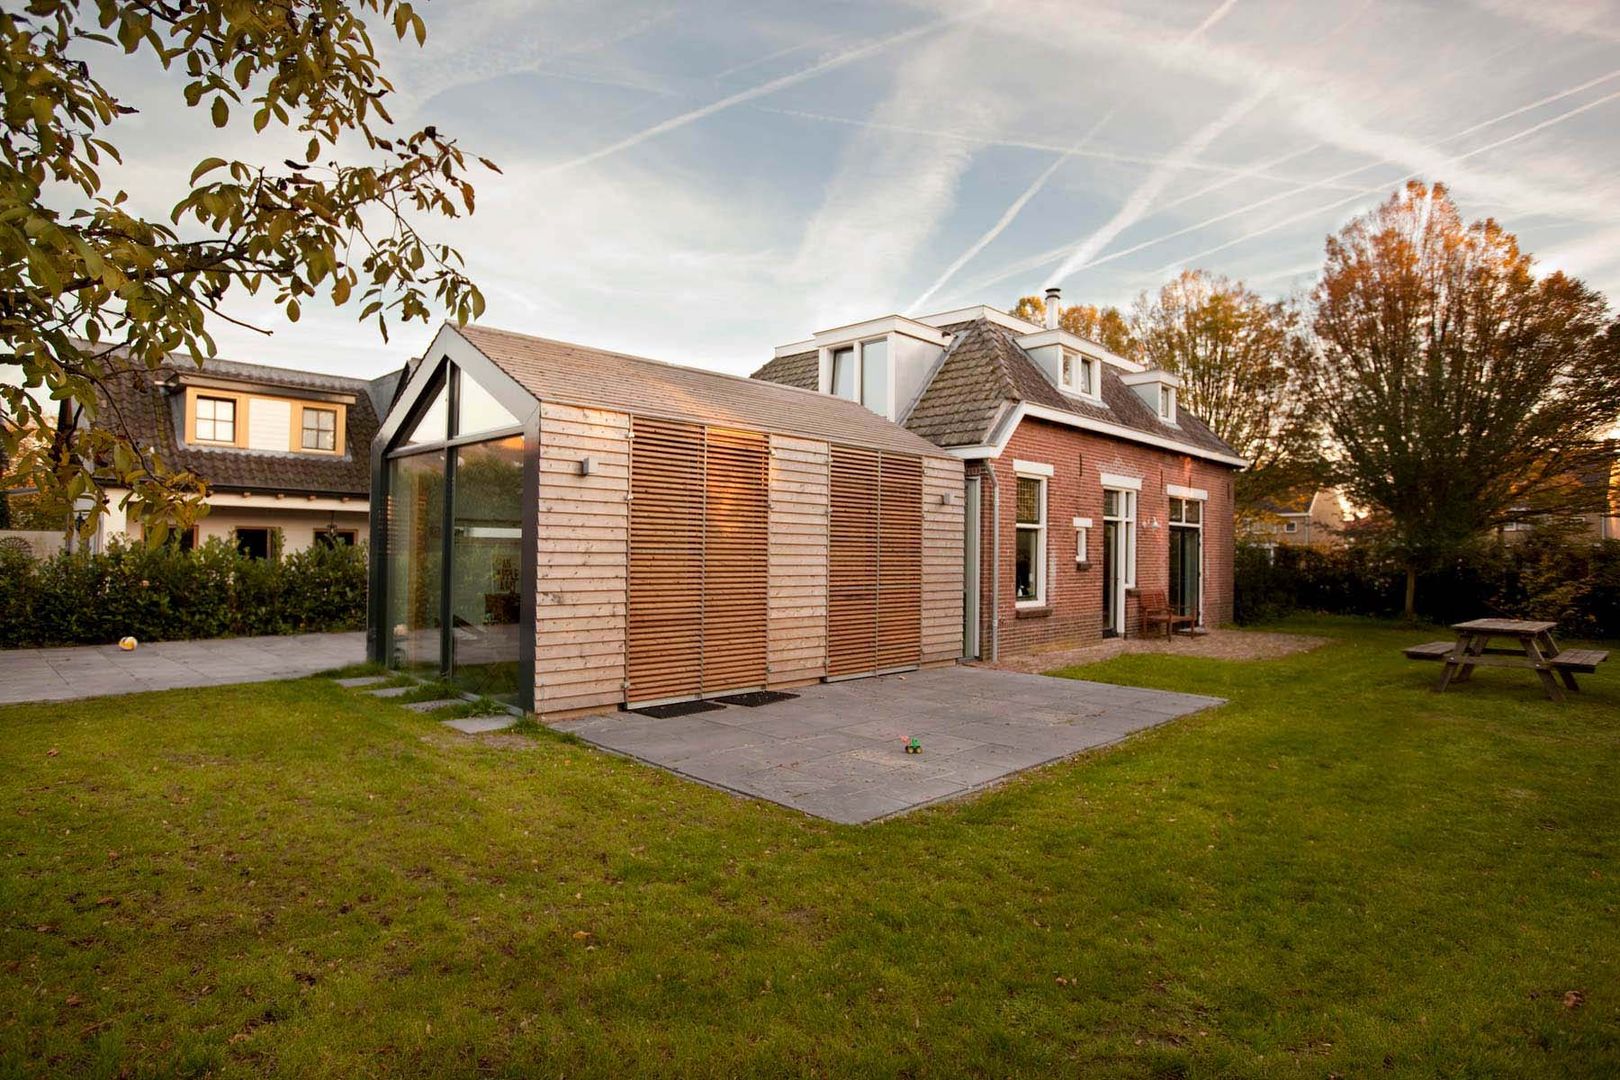 Woonhuis De Meern, RHAW architecture RHAW architecture Modern home